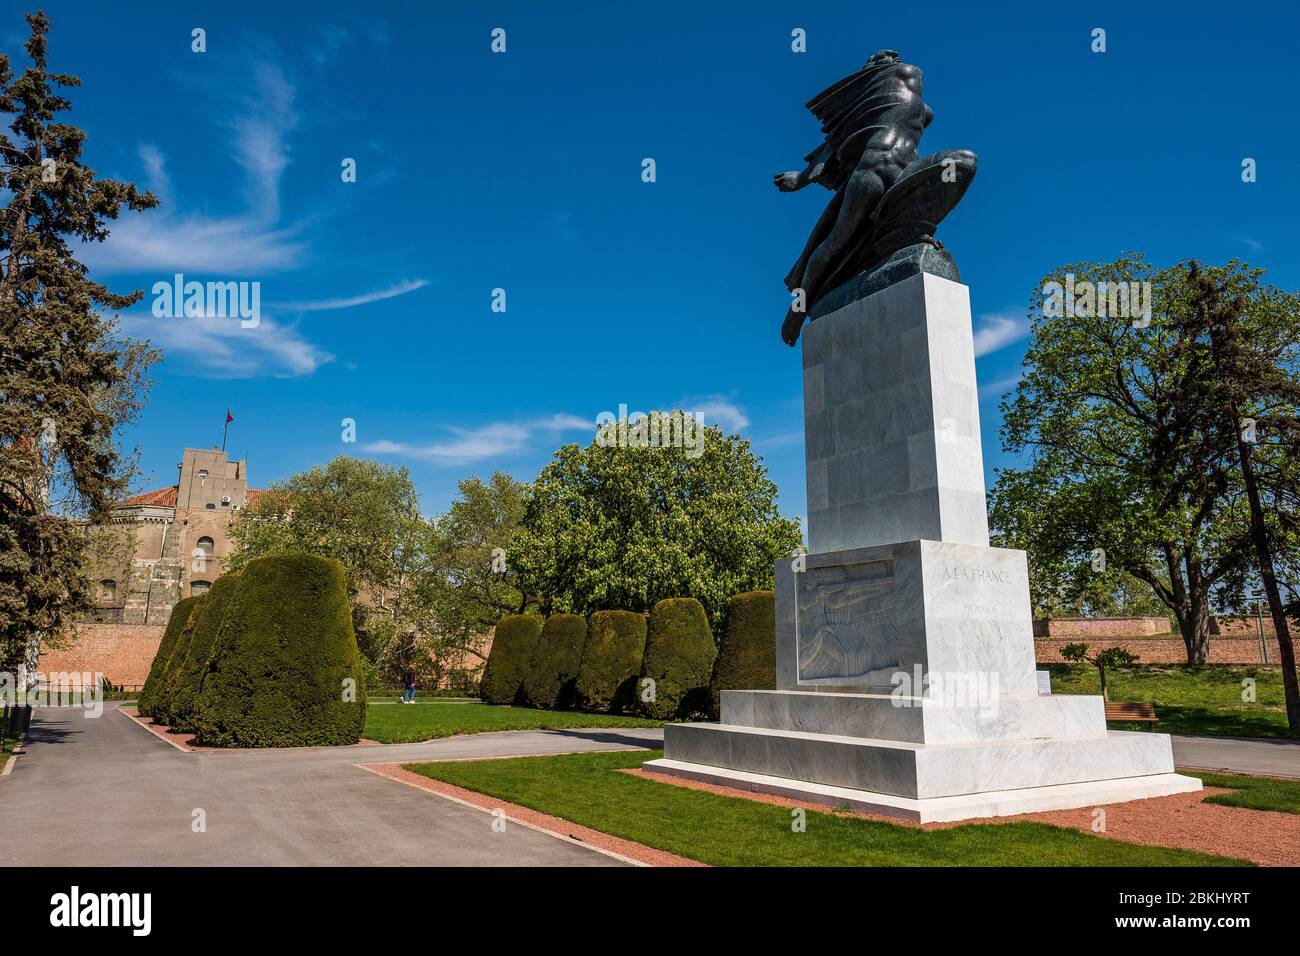 Serbia, Serbia central, Belgrado, monumento de reconocimiento a Francia se encuentra en el parque Kalemegdan con la fortaleza de Belgrado en el fondo Foto de stock